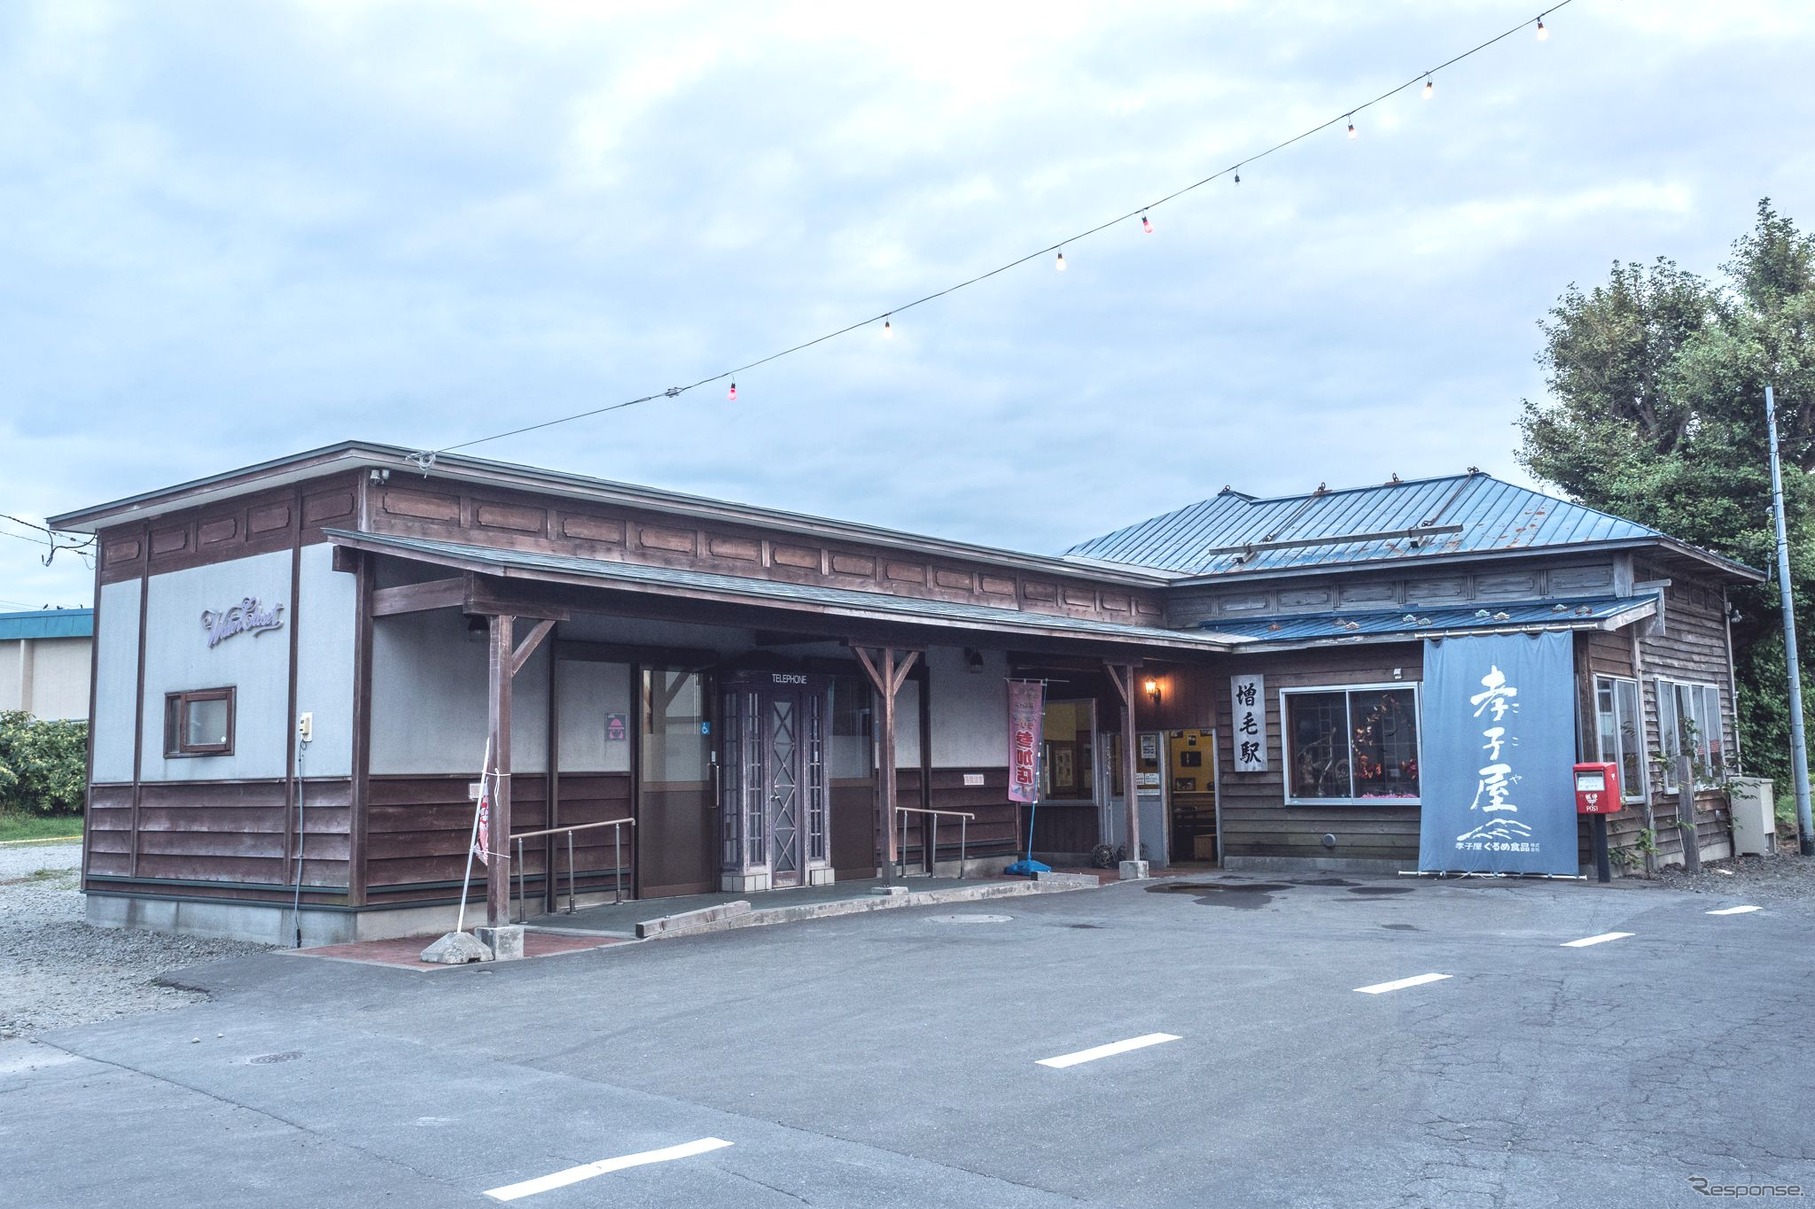 終点の増毛駅舎。かつては高倉健主演の映画で一世を風靡した。